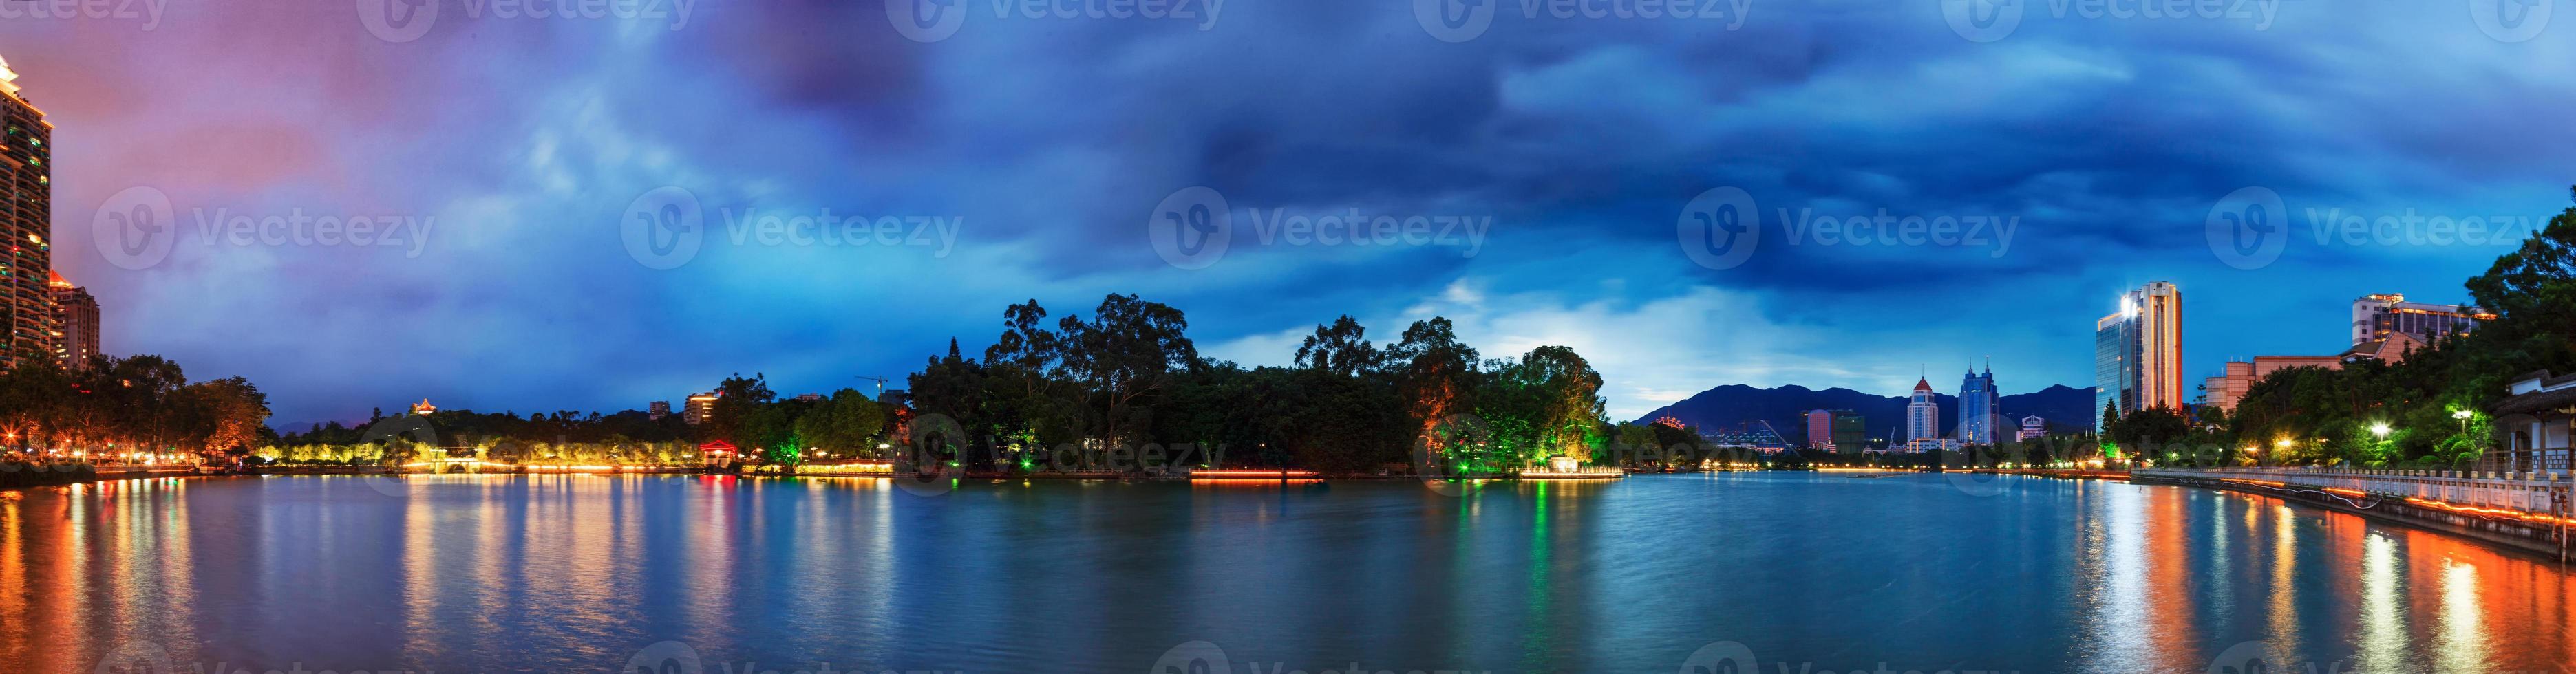 dramatische hemel boven een waterpark in Fuzhou, China foto